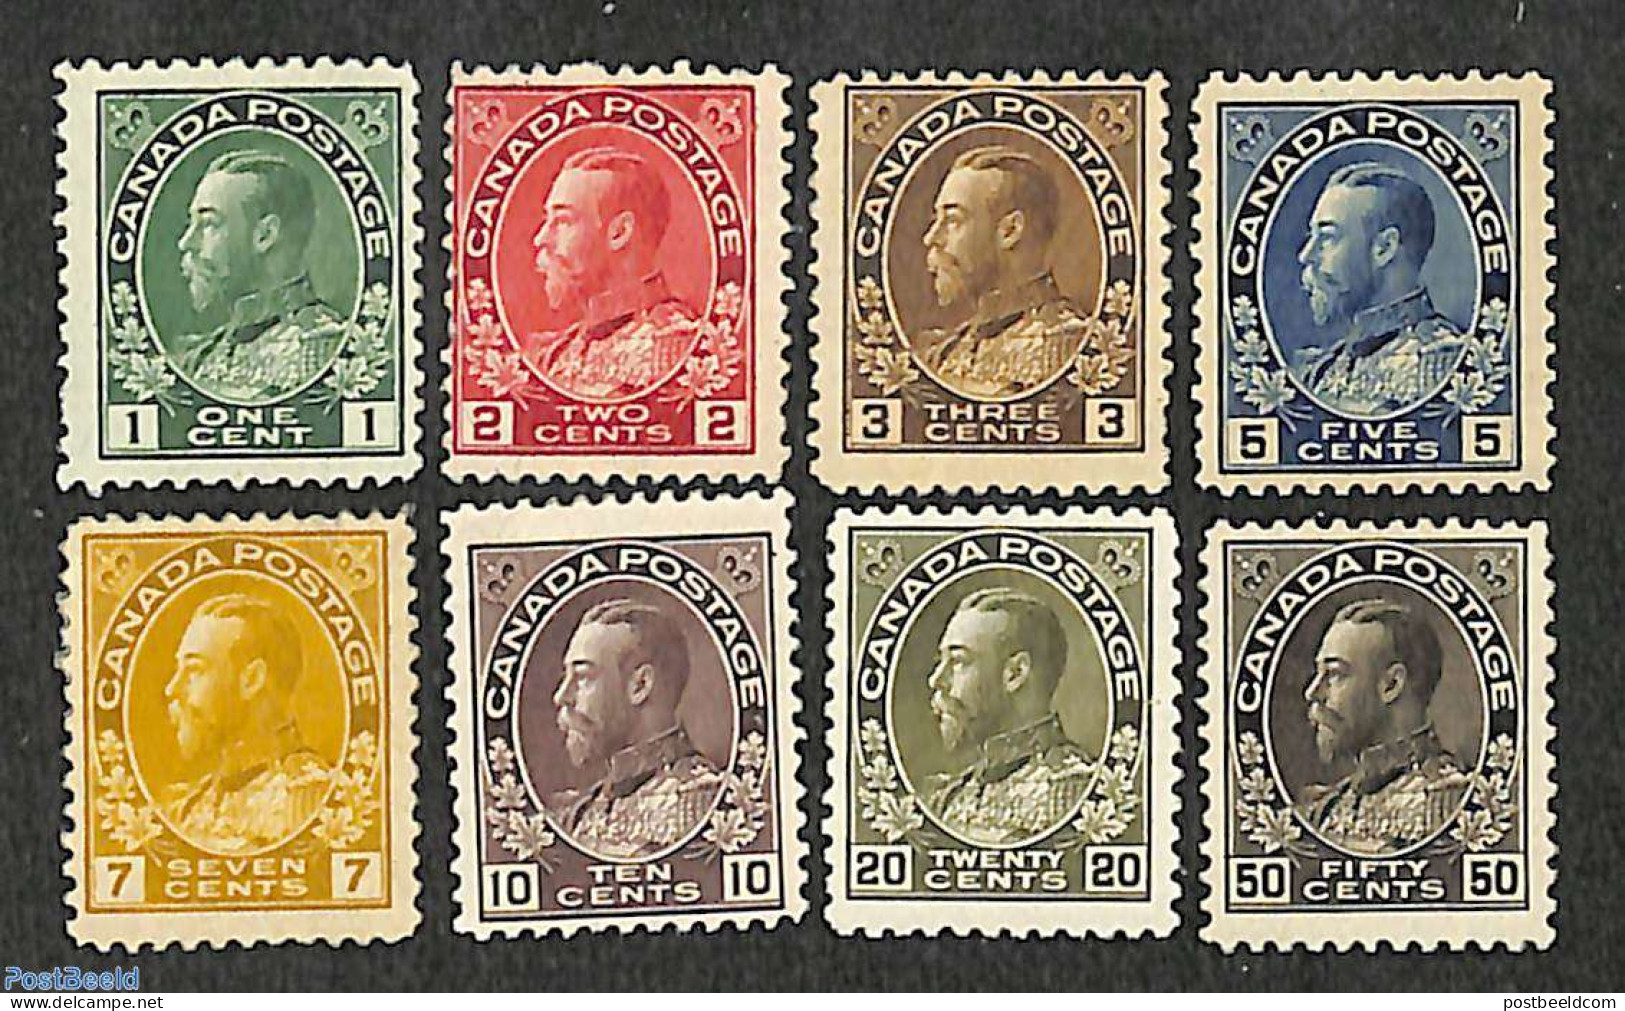 Canada 1911 Definitives, George V 8v, Unused (hinged) - Unused Stamps